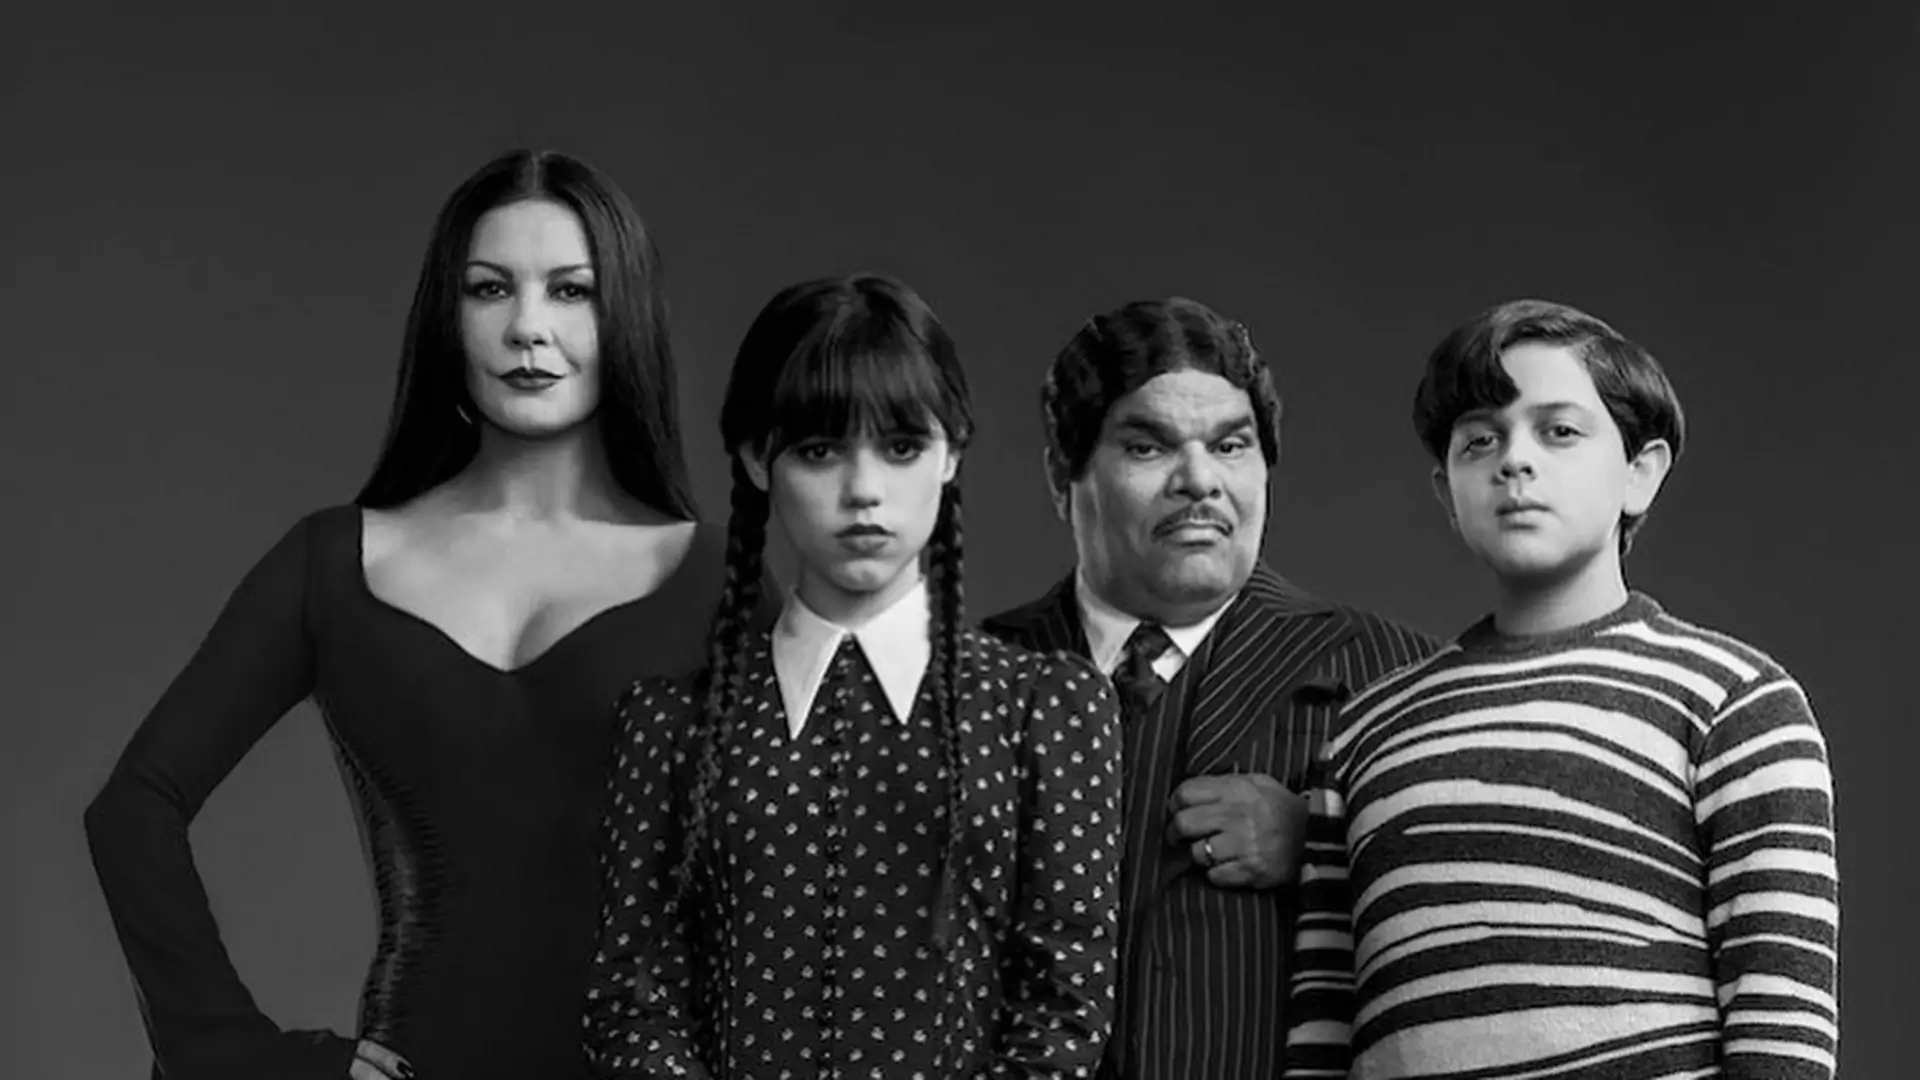 Oto nowa rodzina Addamsów! Netflix pokazał zwiastun serialu "Wednesday"